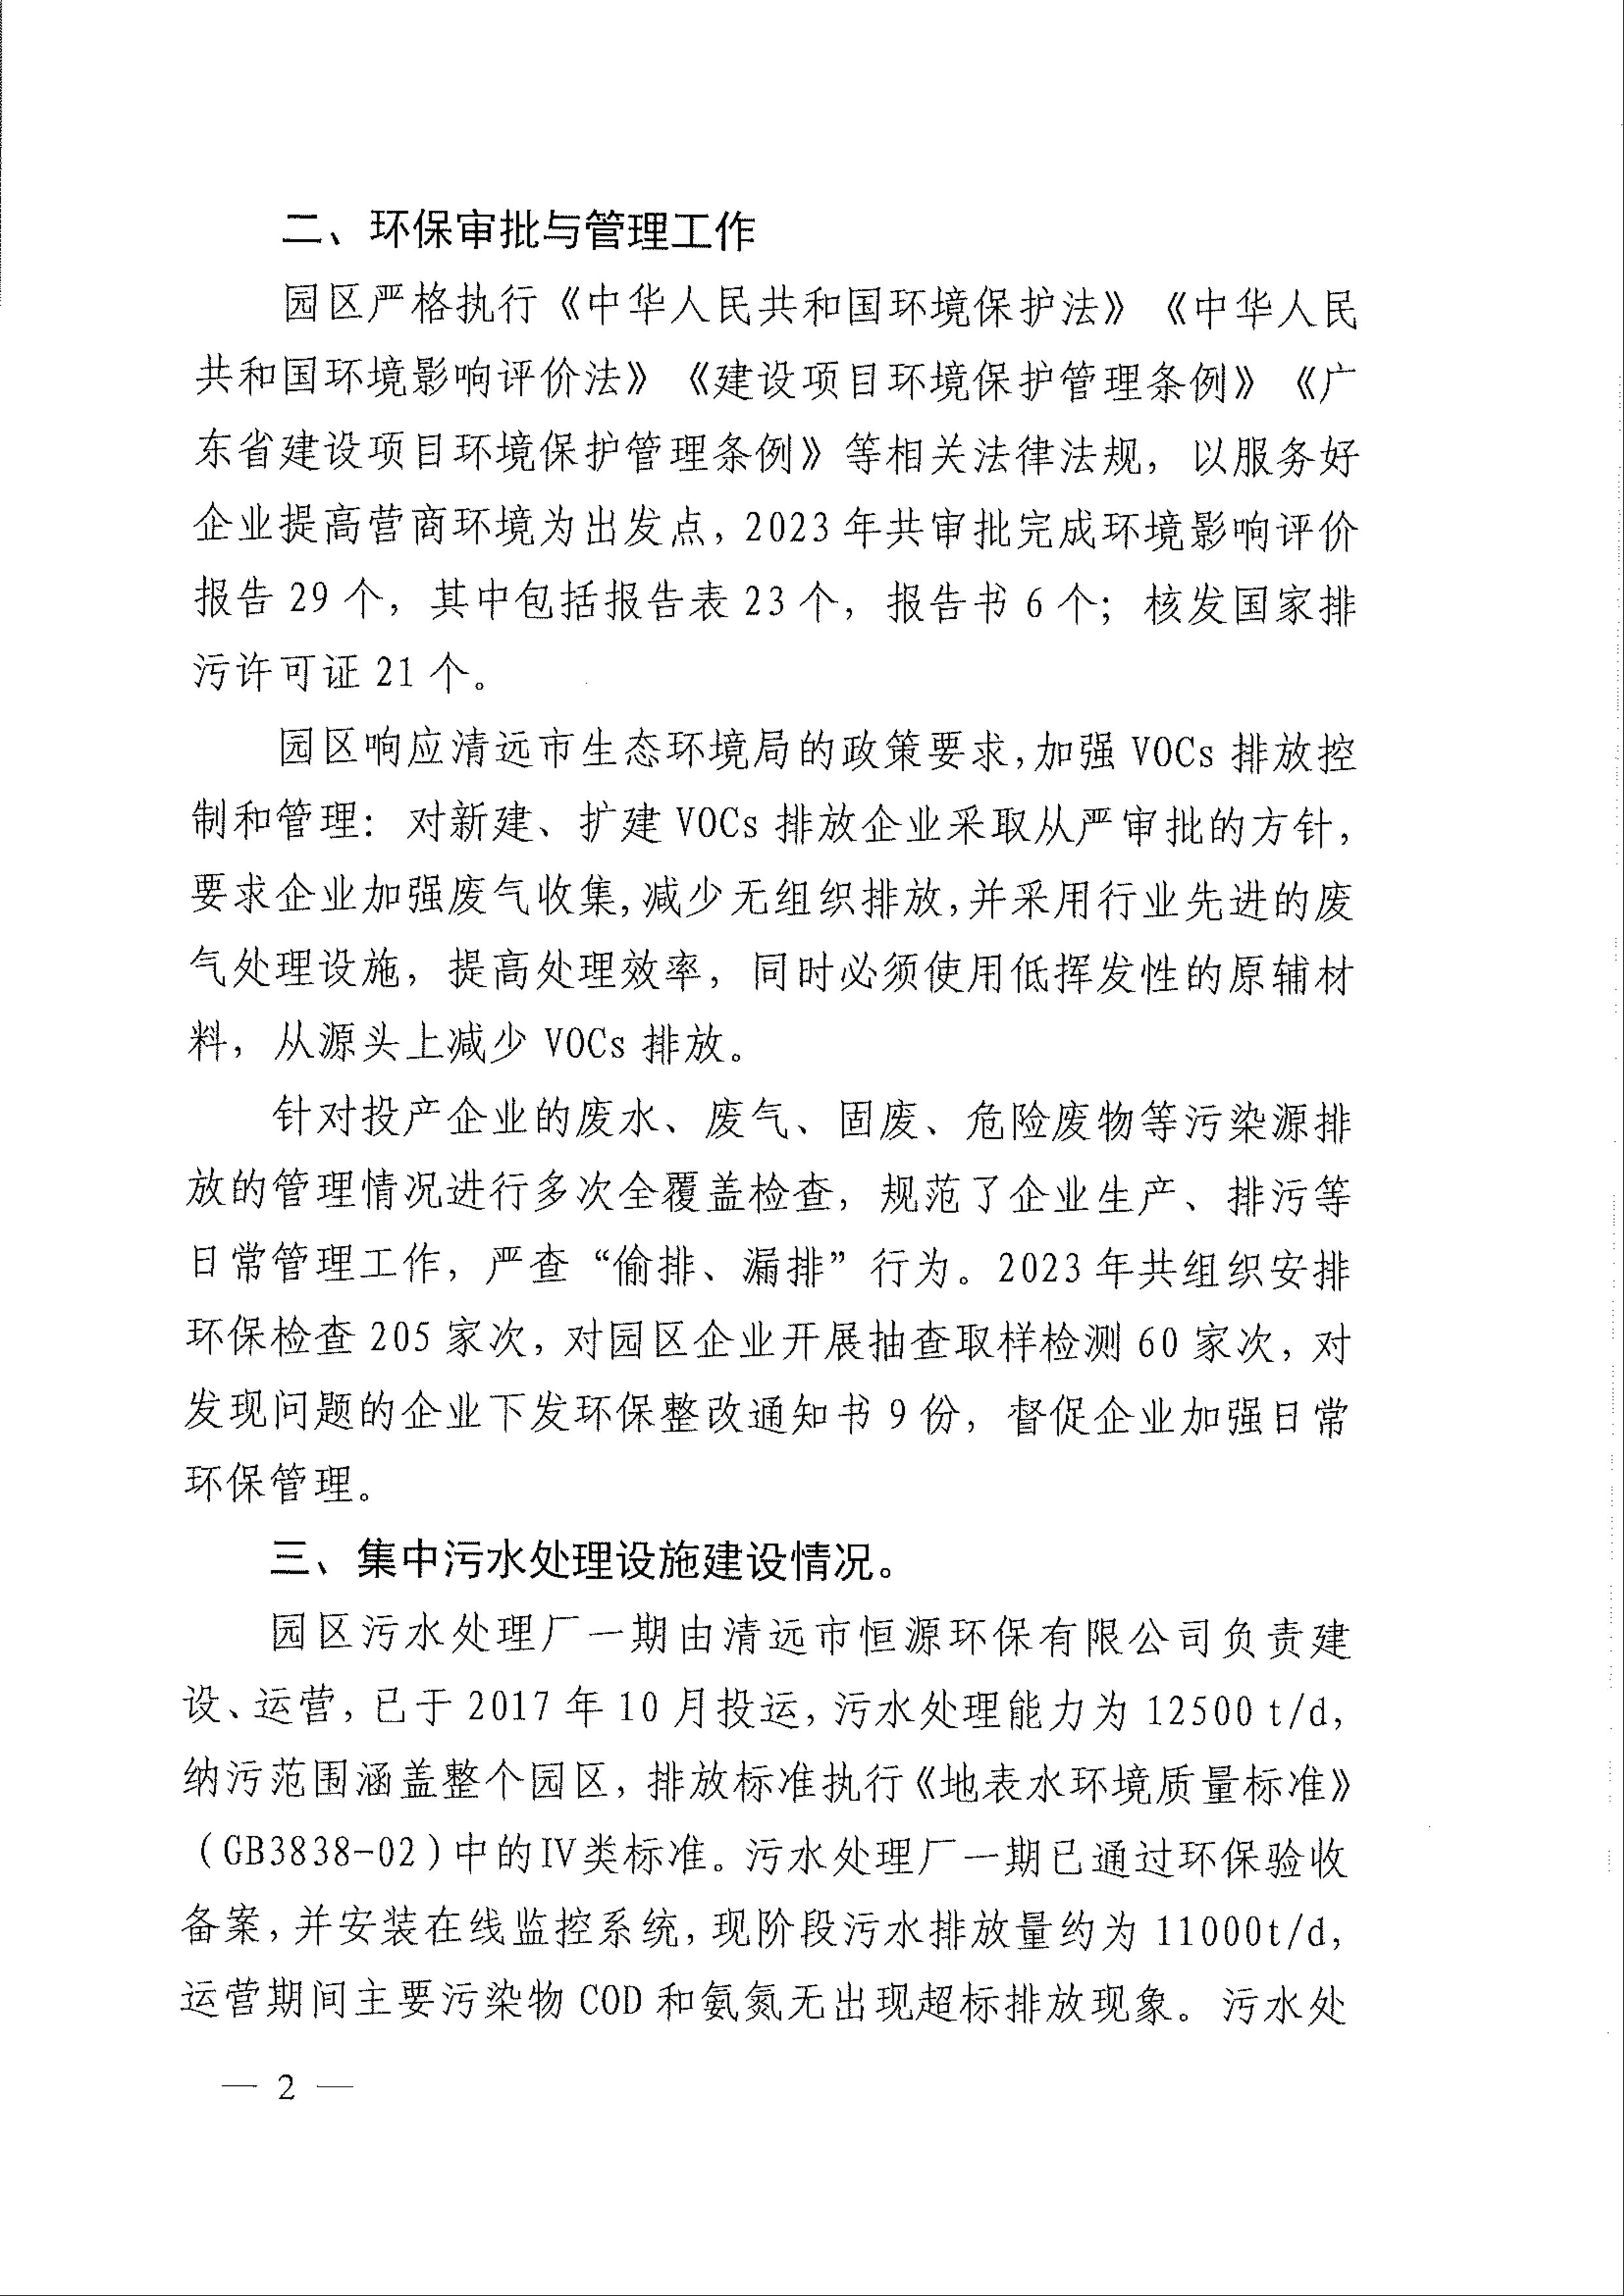 2023年广清经济特别合作区广清产业园环境管理状况评估报告2.jpeg